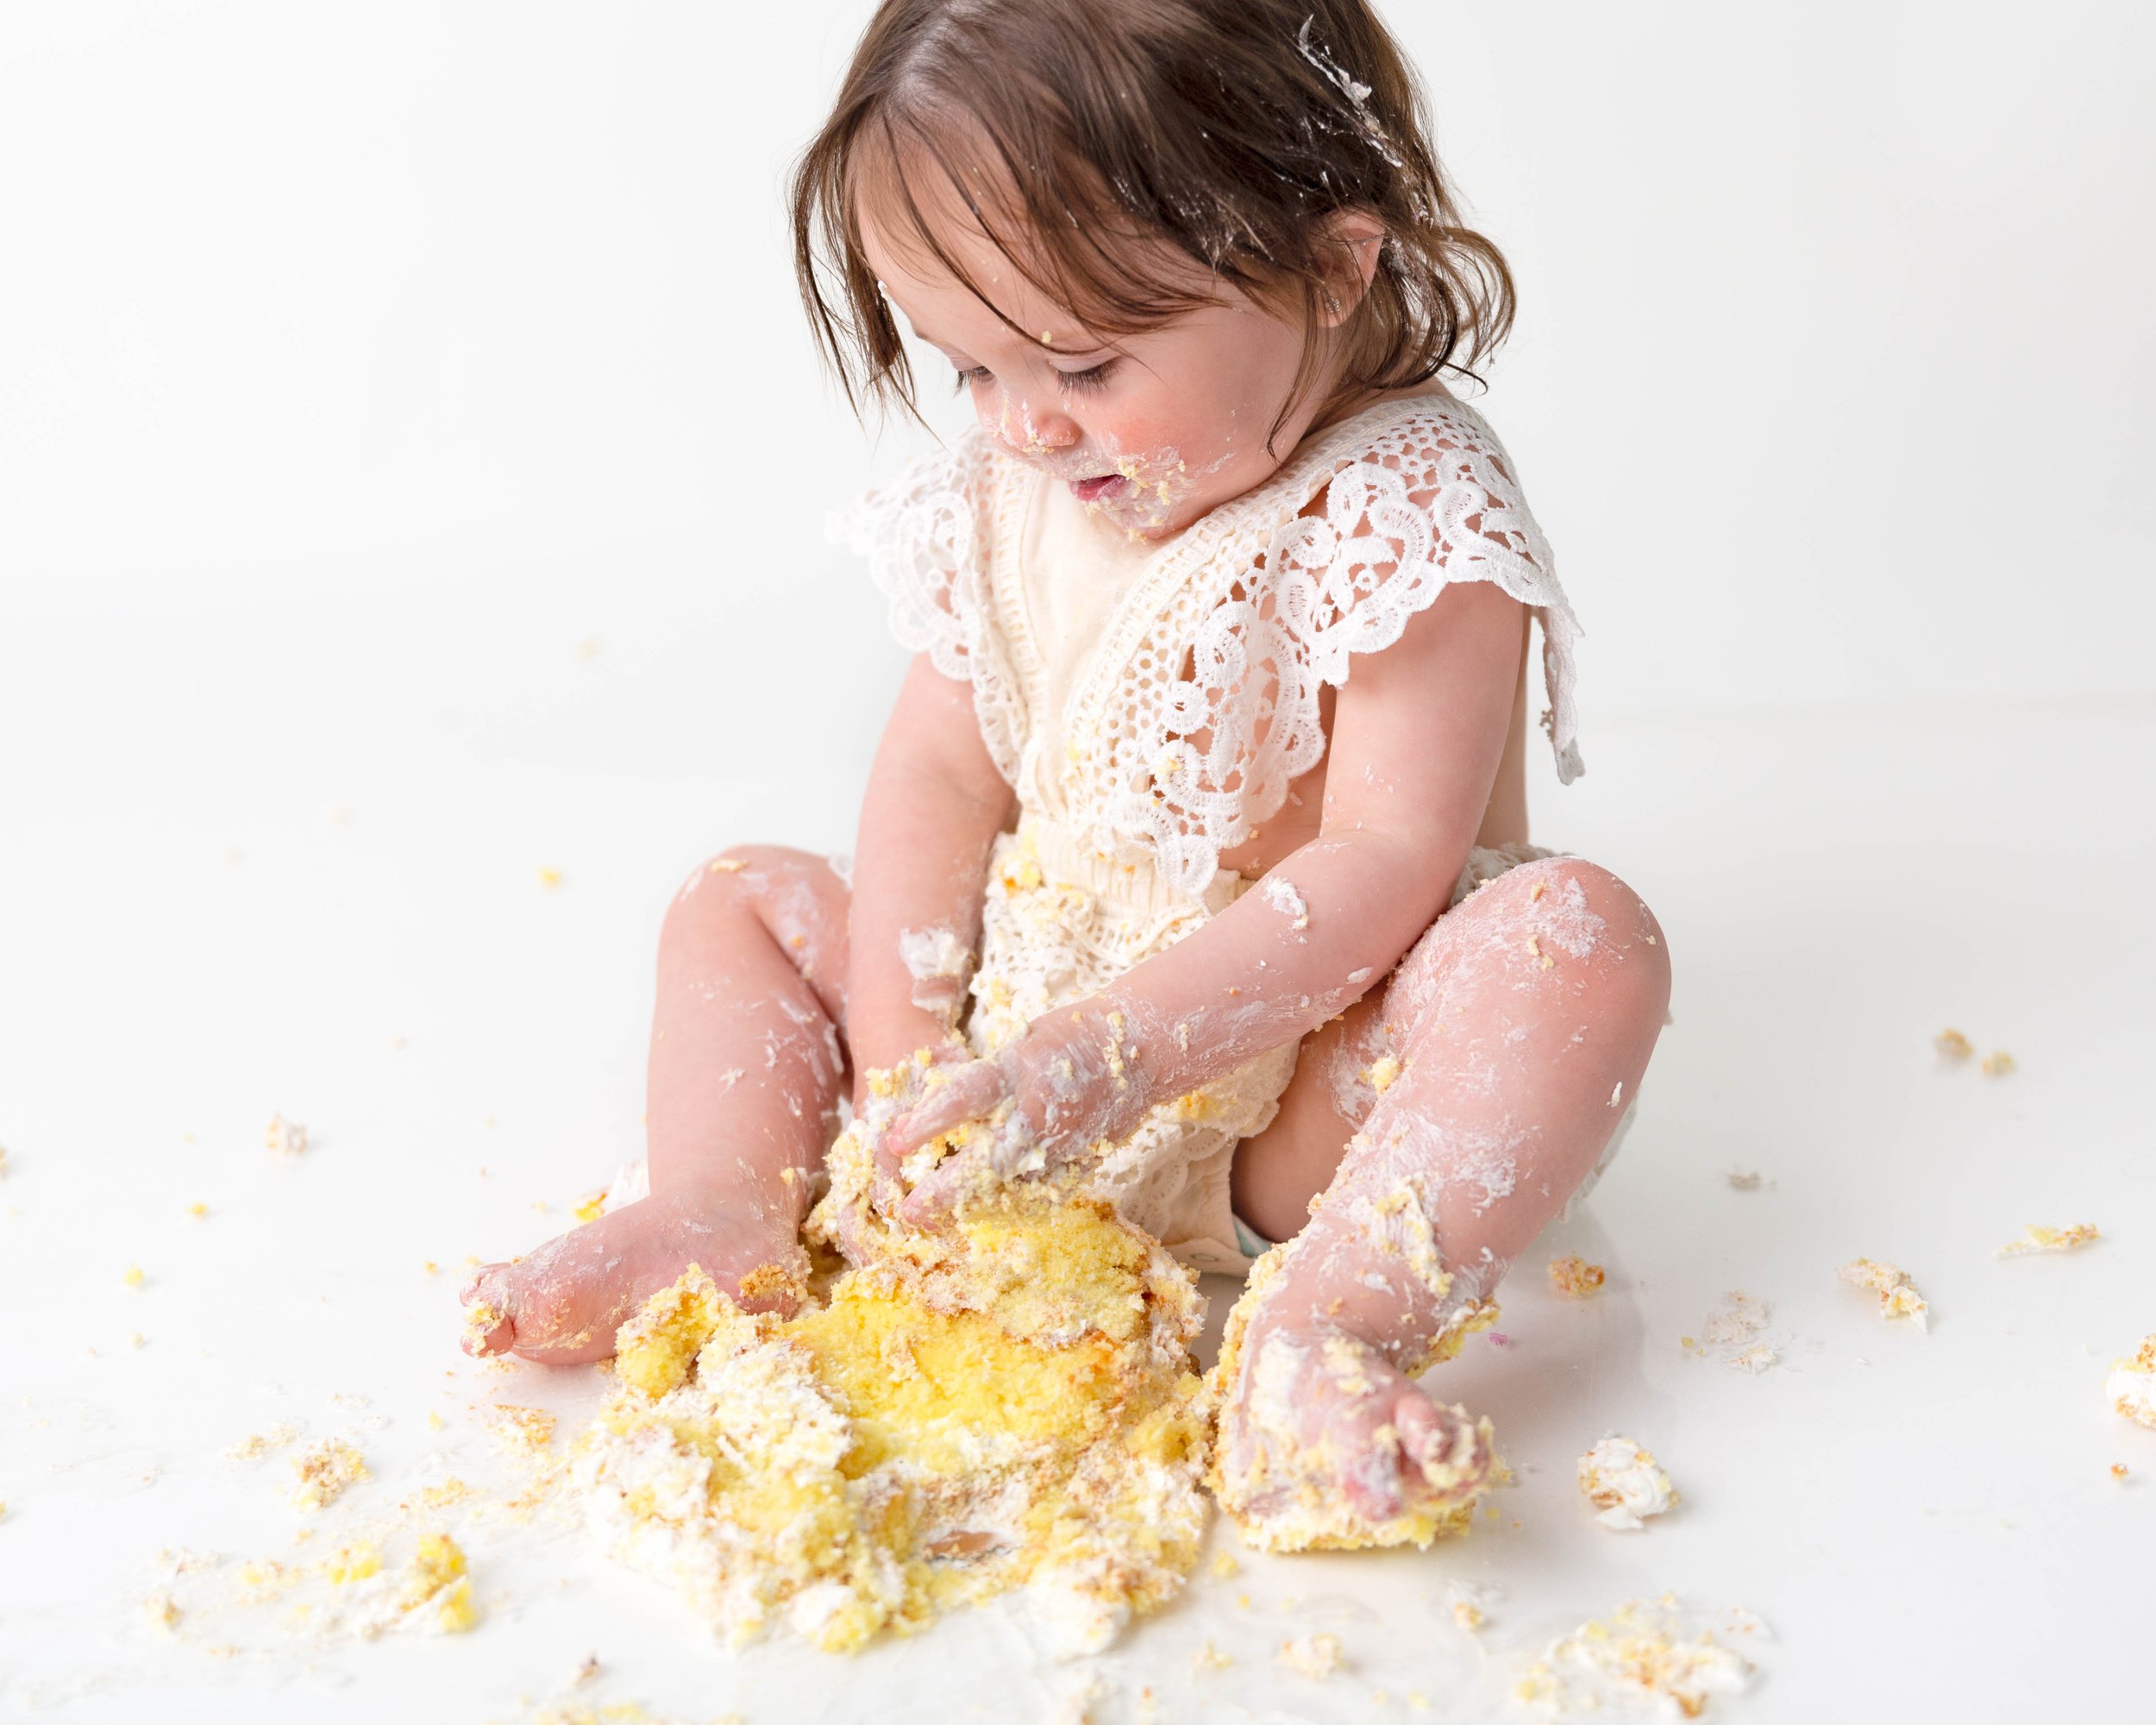 Cake-smash-one-year-old-photos-milestone-images-newborn-photography-baby-girl-spokane-washington-7.jpg